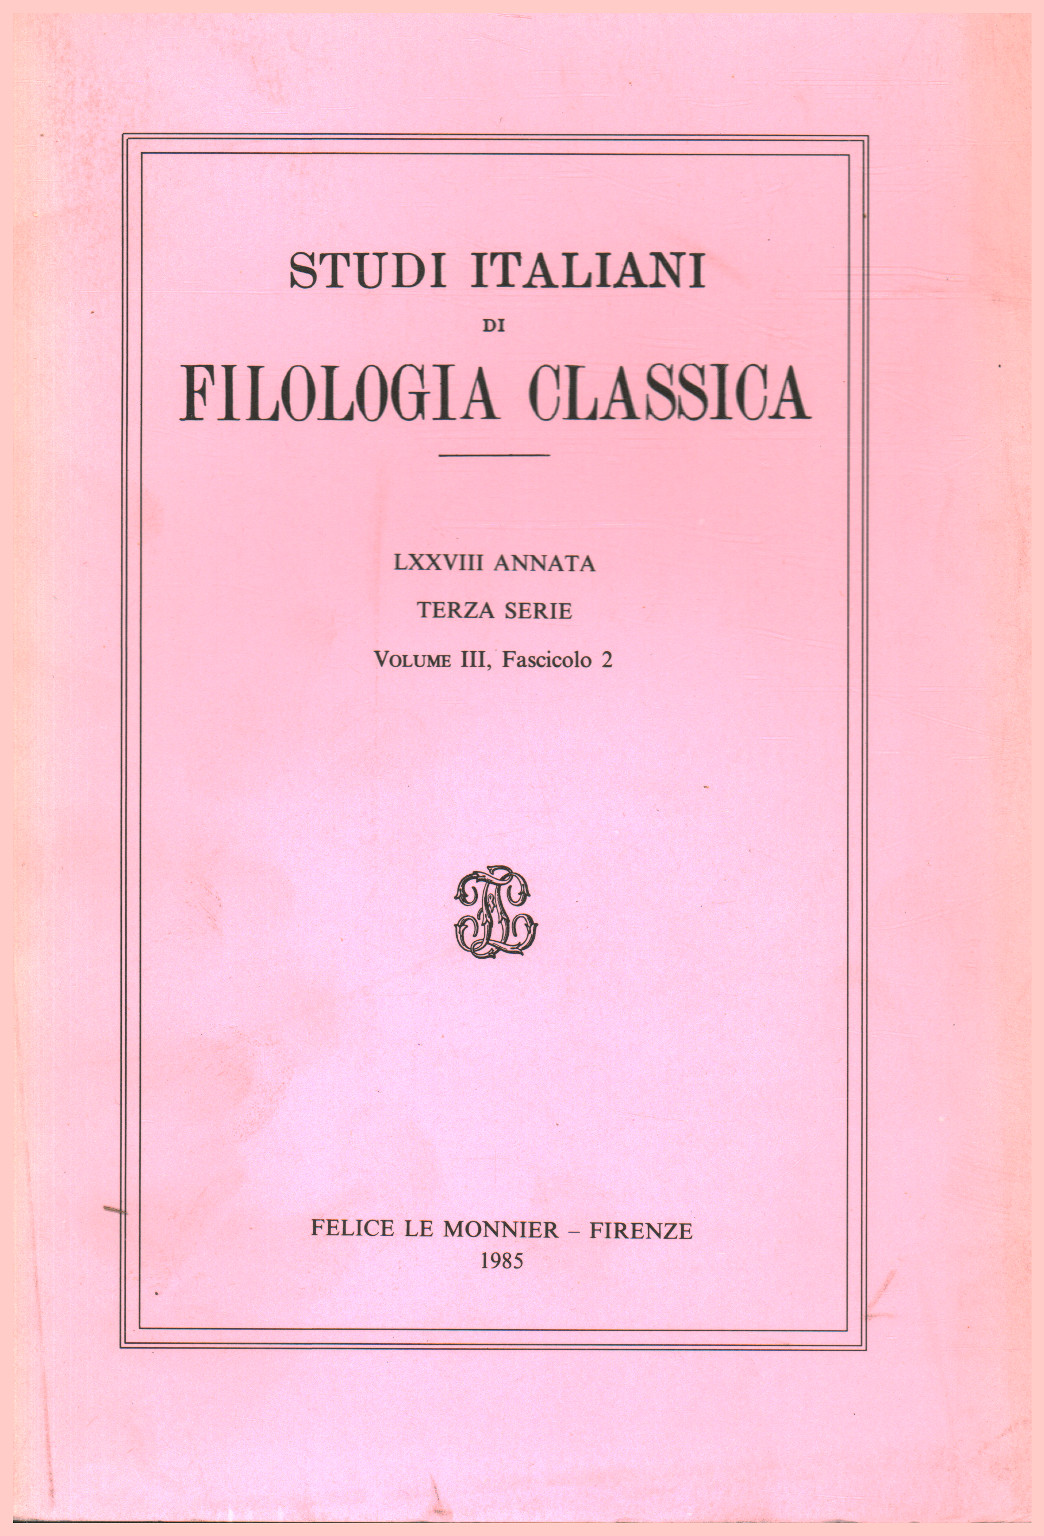 Italiano de los estudios de filología clásica, LXXVIII Annat, s.una.